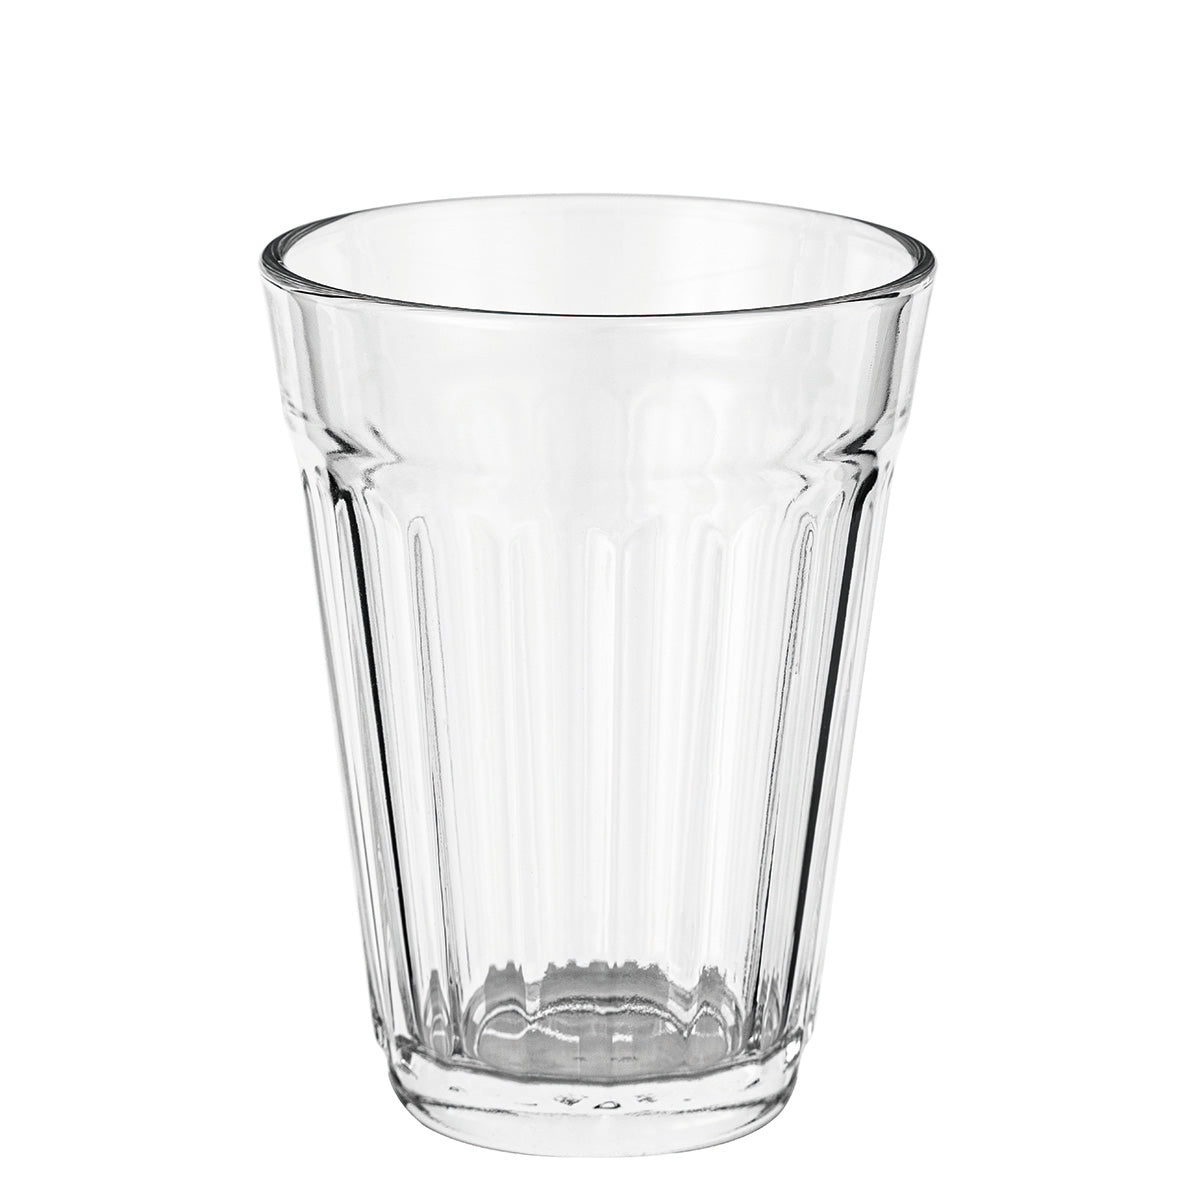 【家居】可堆疊玻璃水杯4只裝 330ml HJ001